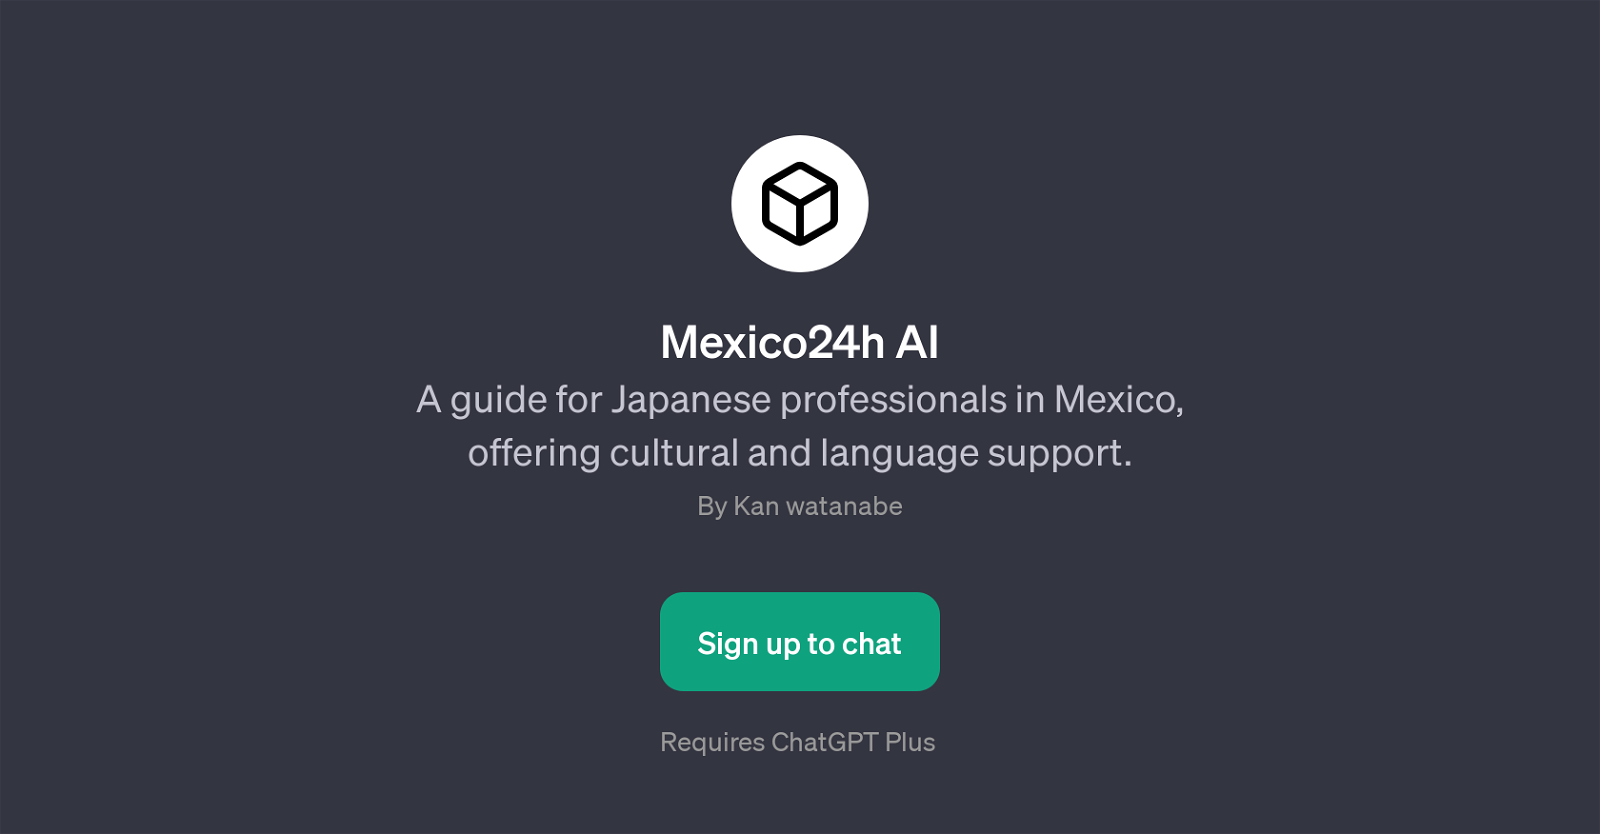 Mexico24h AI website